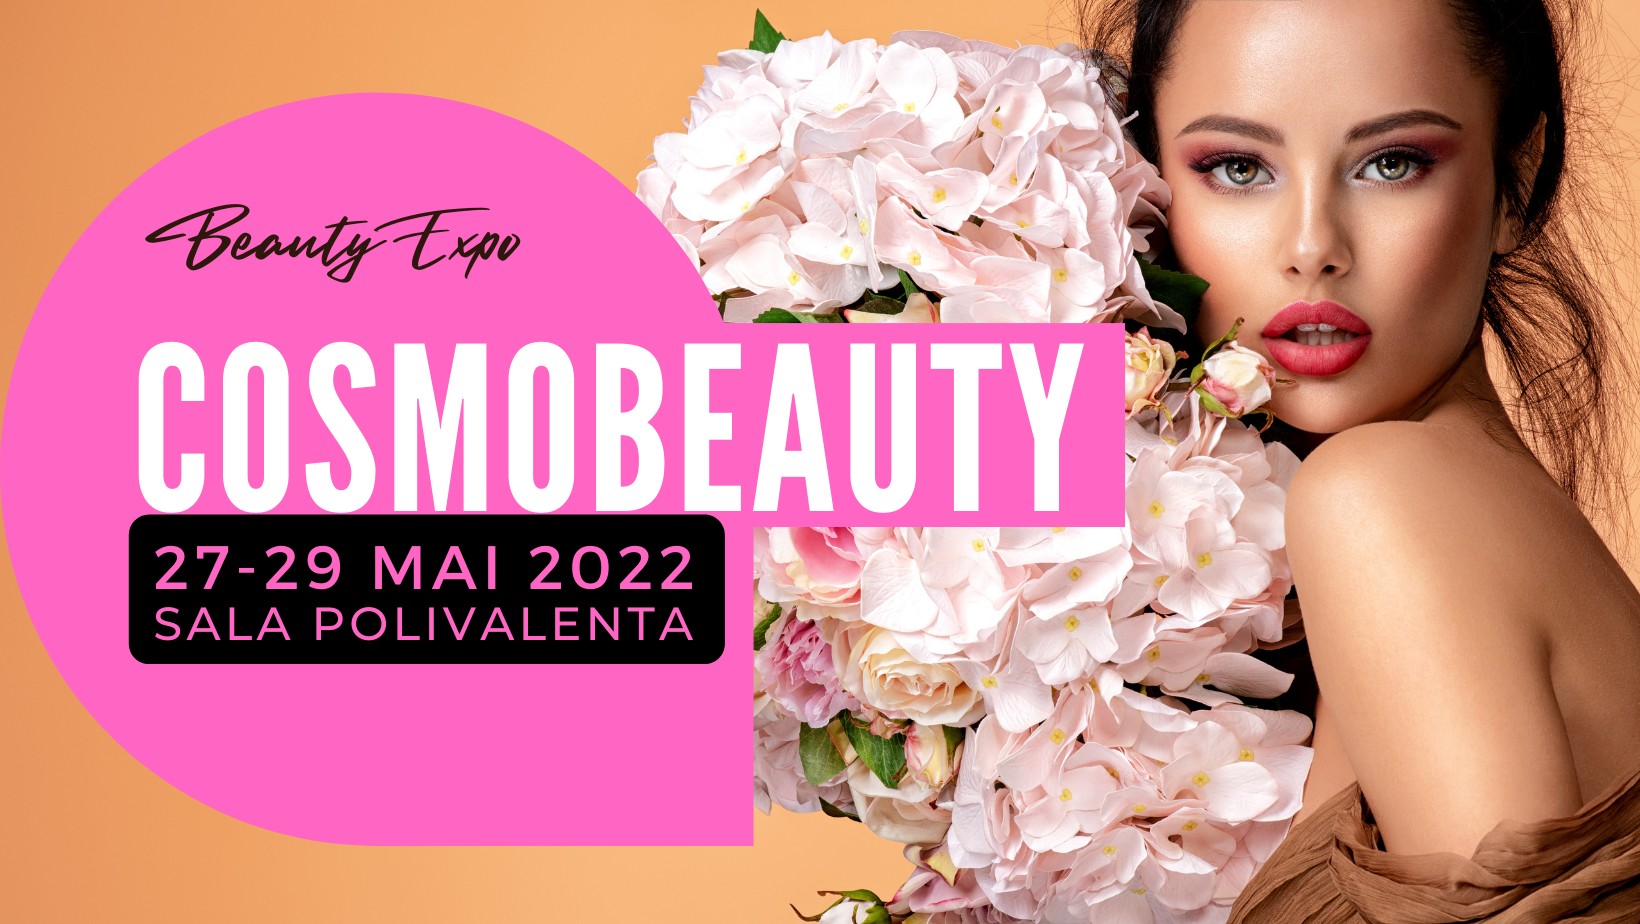 Cosmobeauty Expo 2022 2729 mai 2022, Sala Polivalentă BRAVO net